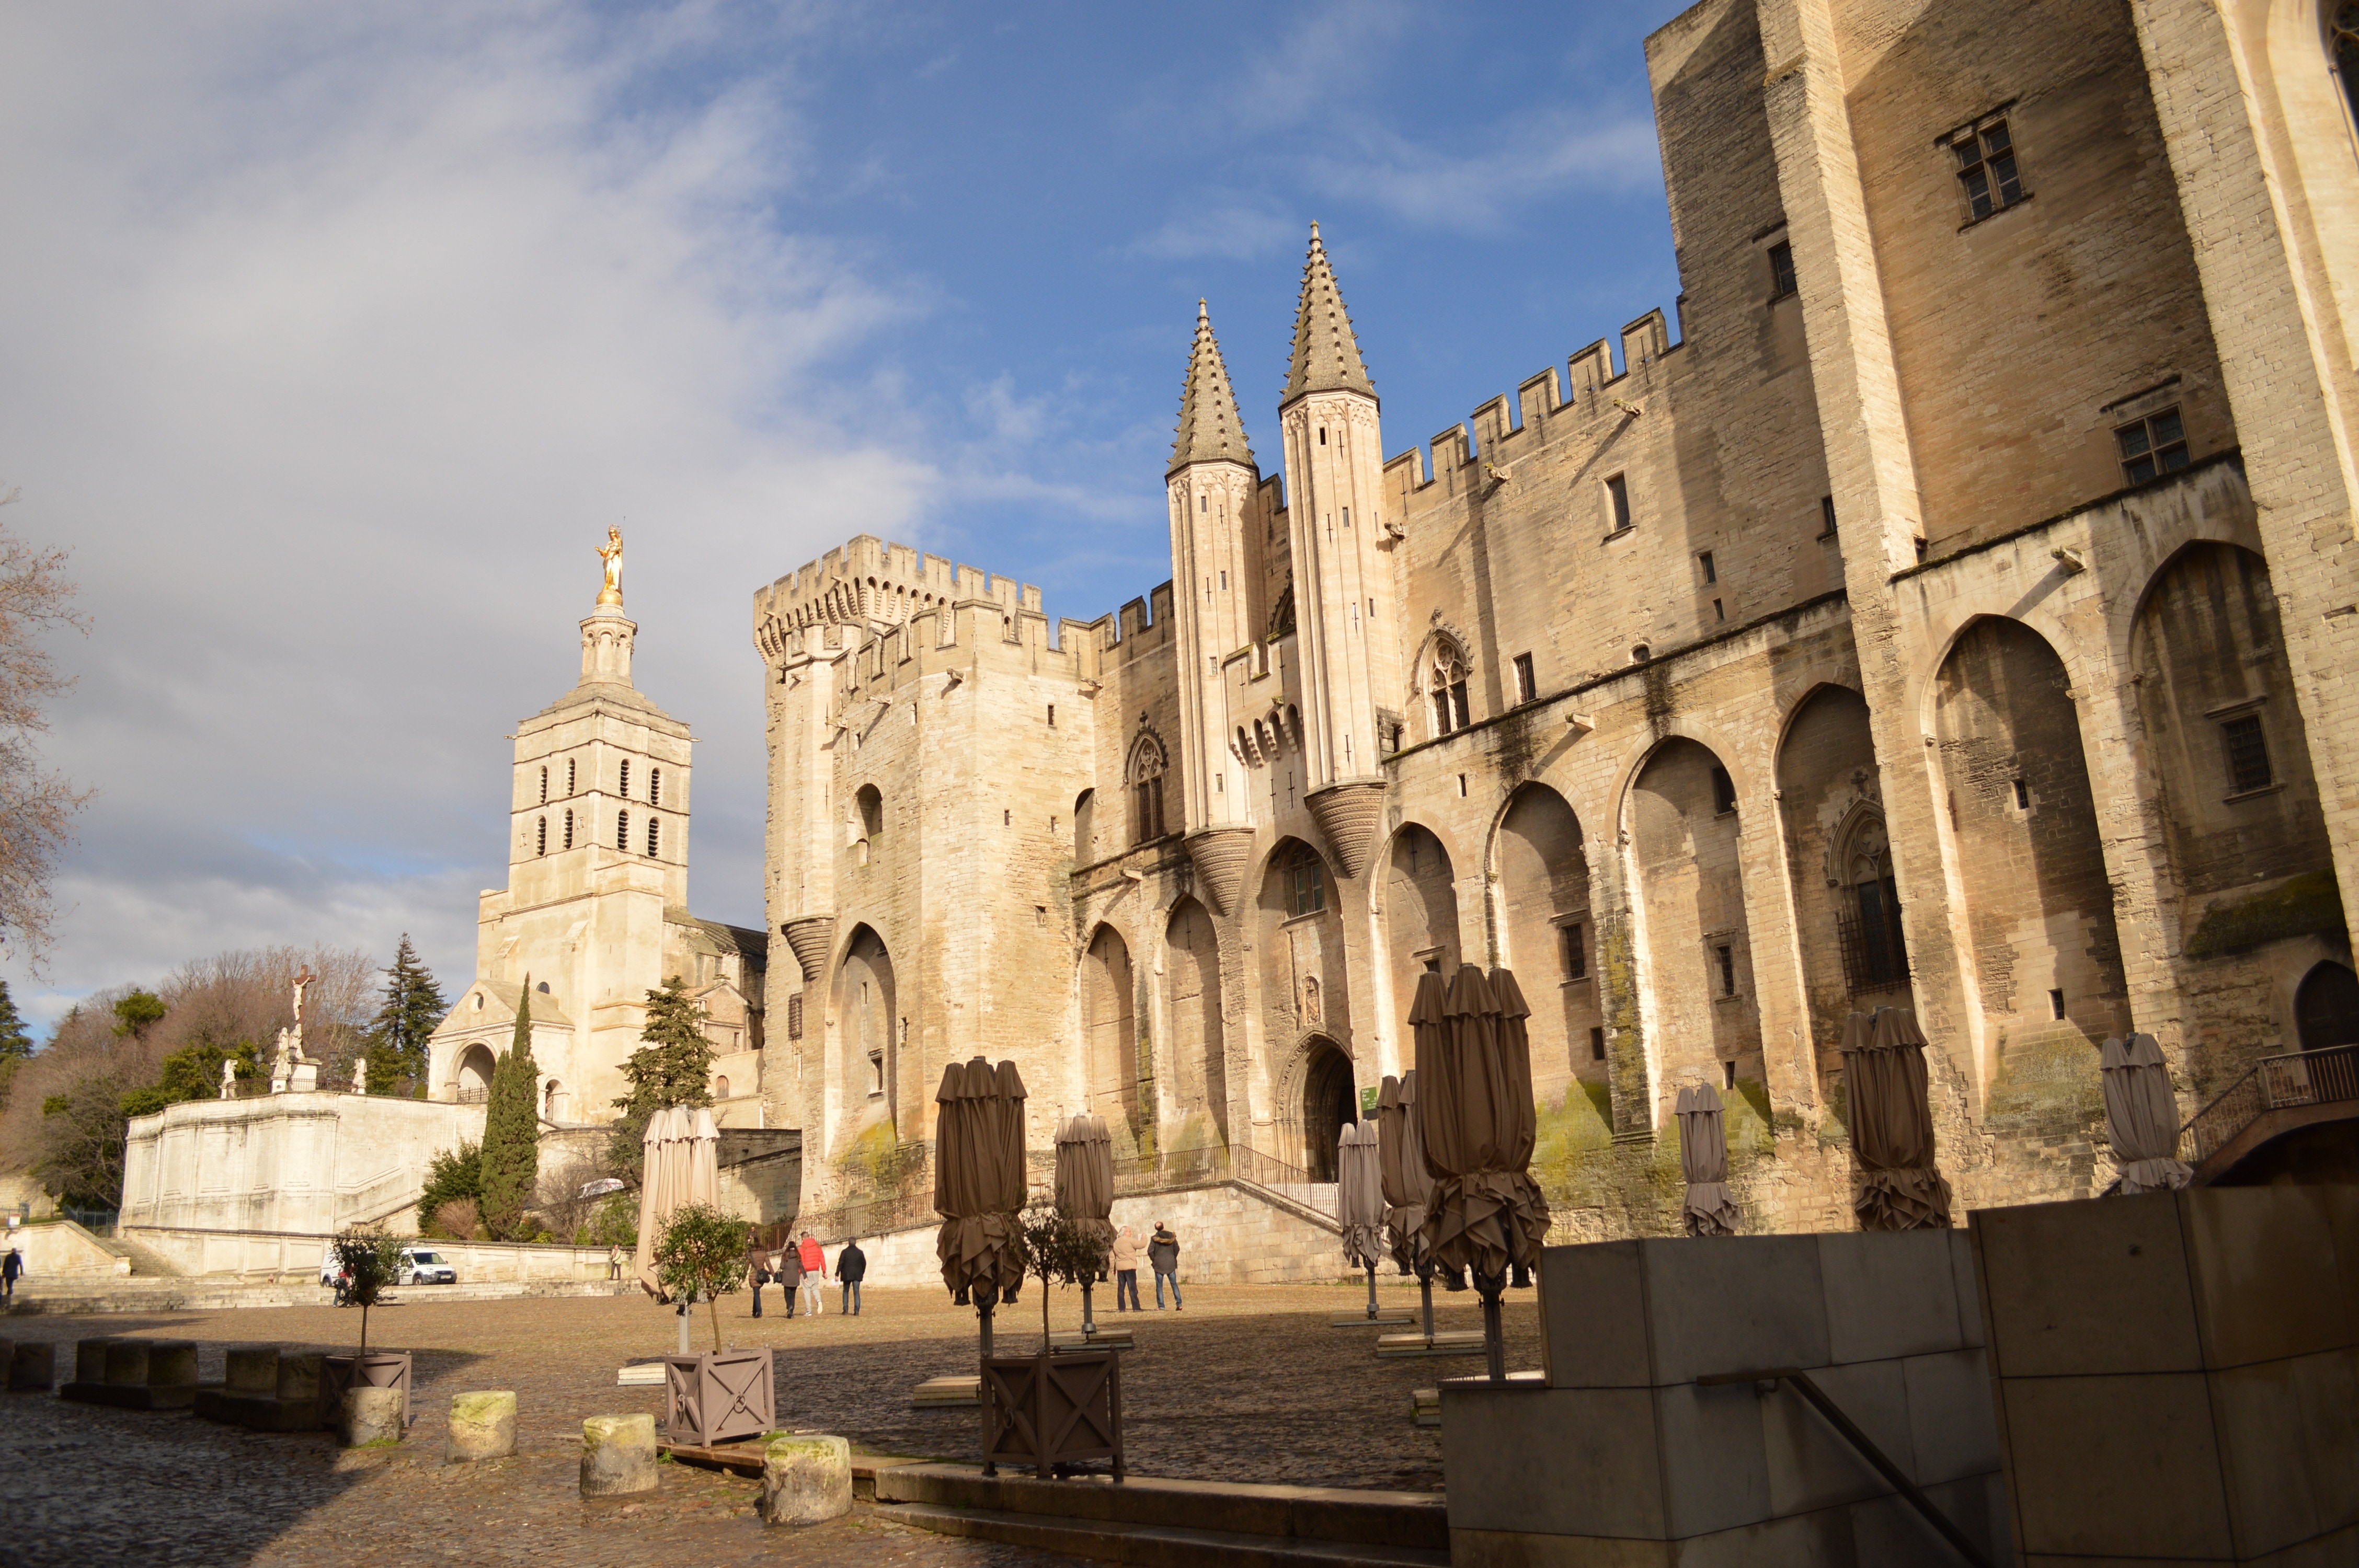 Avignon, Castle, France, Architecture, architecture, religion